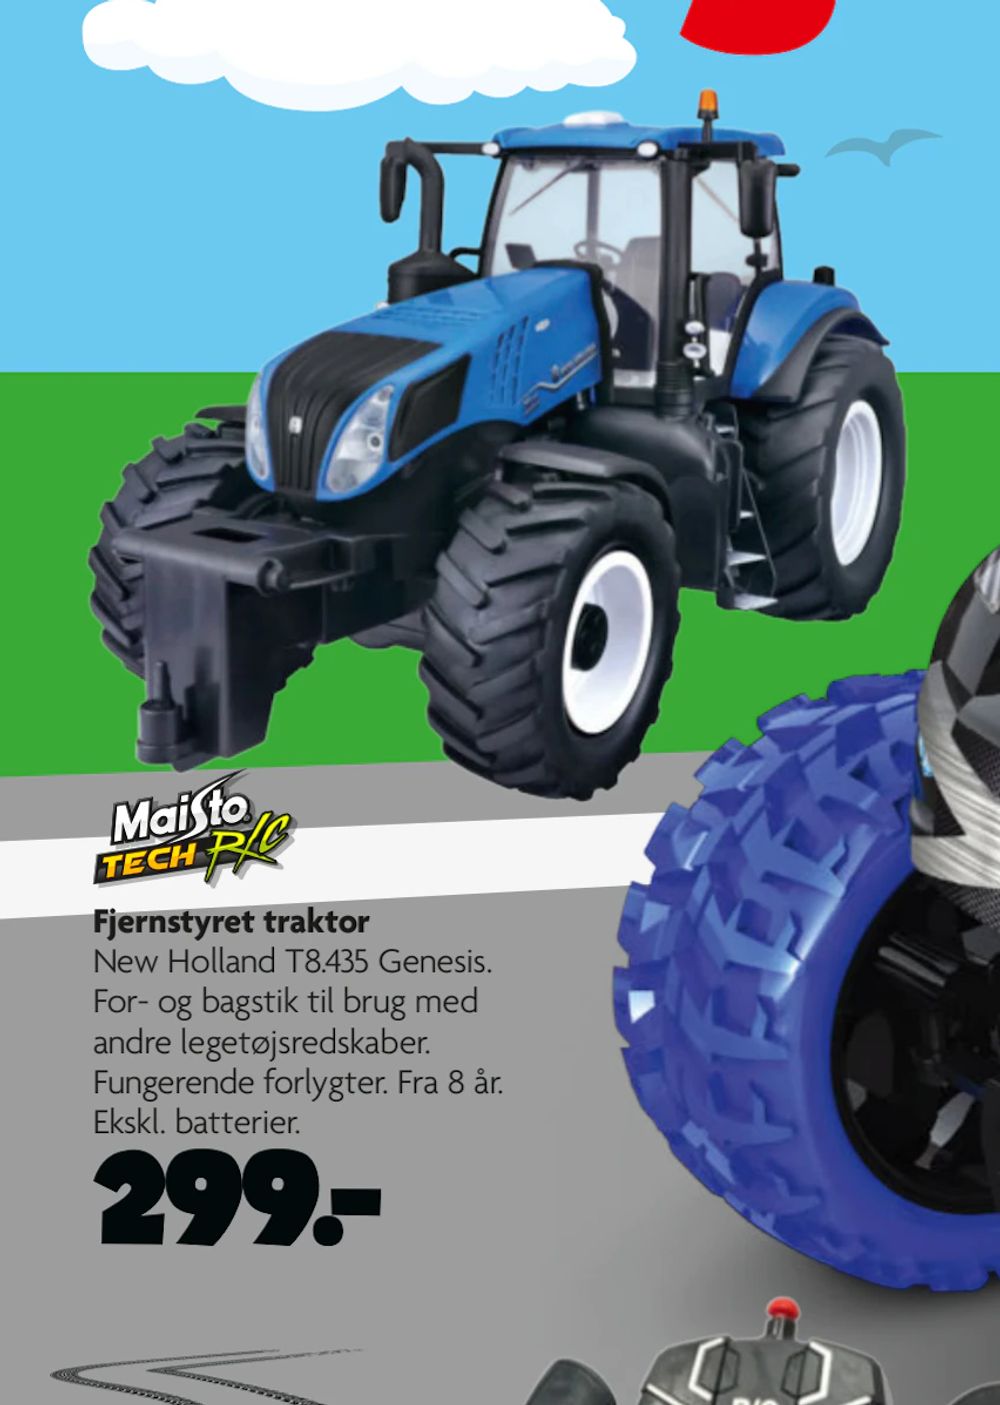 Tilbud på Fjernstyret traktor fra BR til 299 kr.